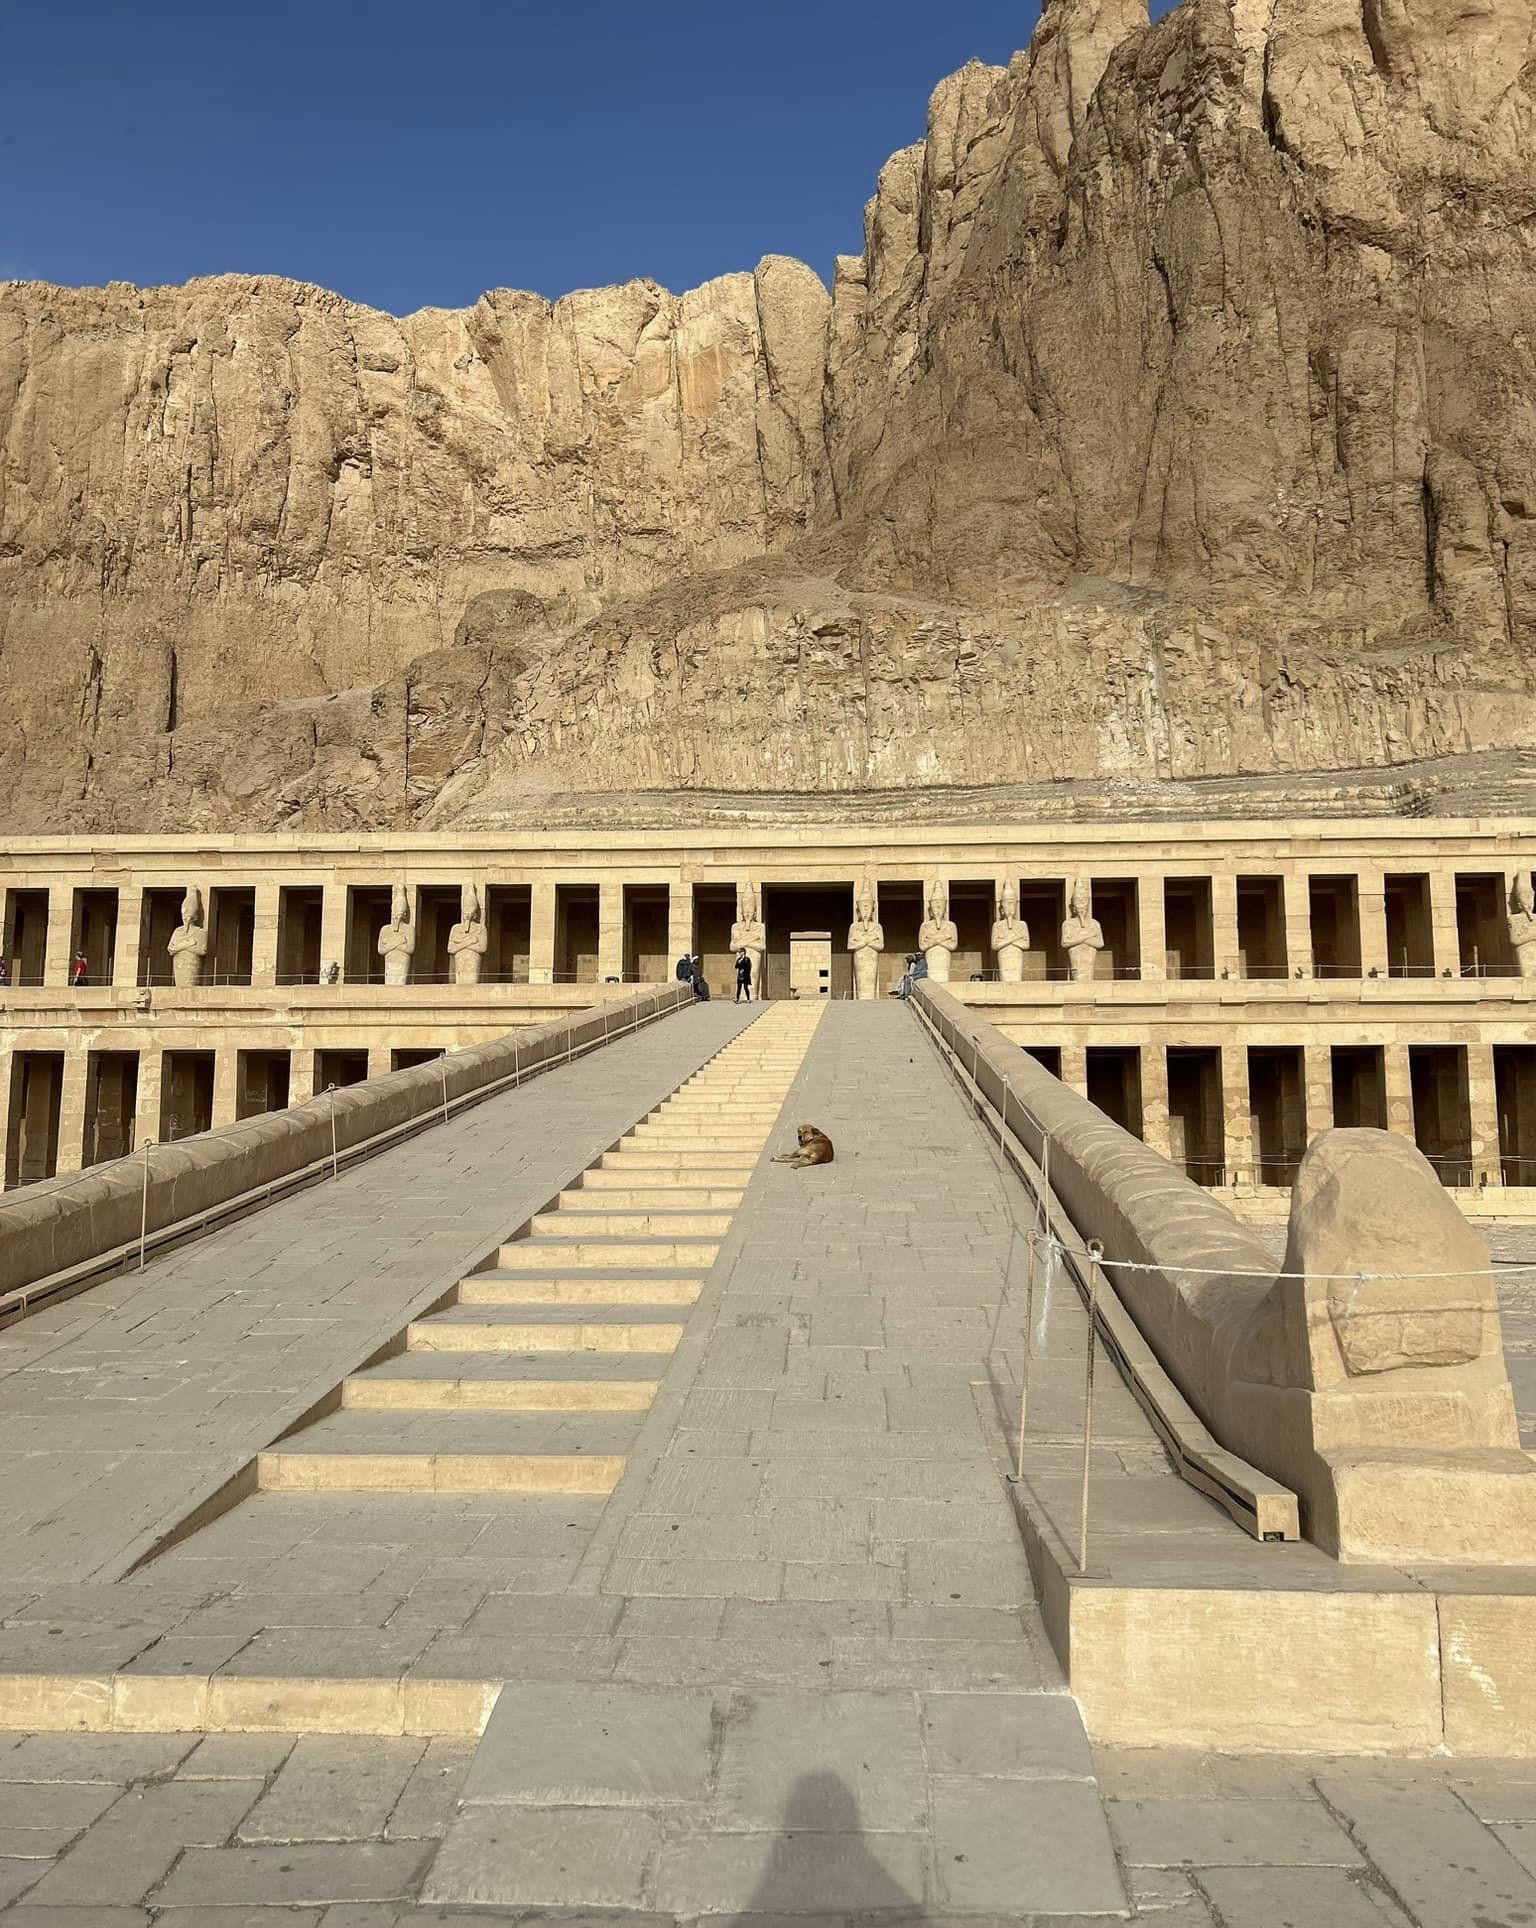 السلالم المؤدية إلى معبد الملك حتشبسوت بالقرنة